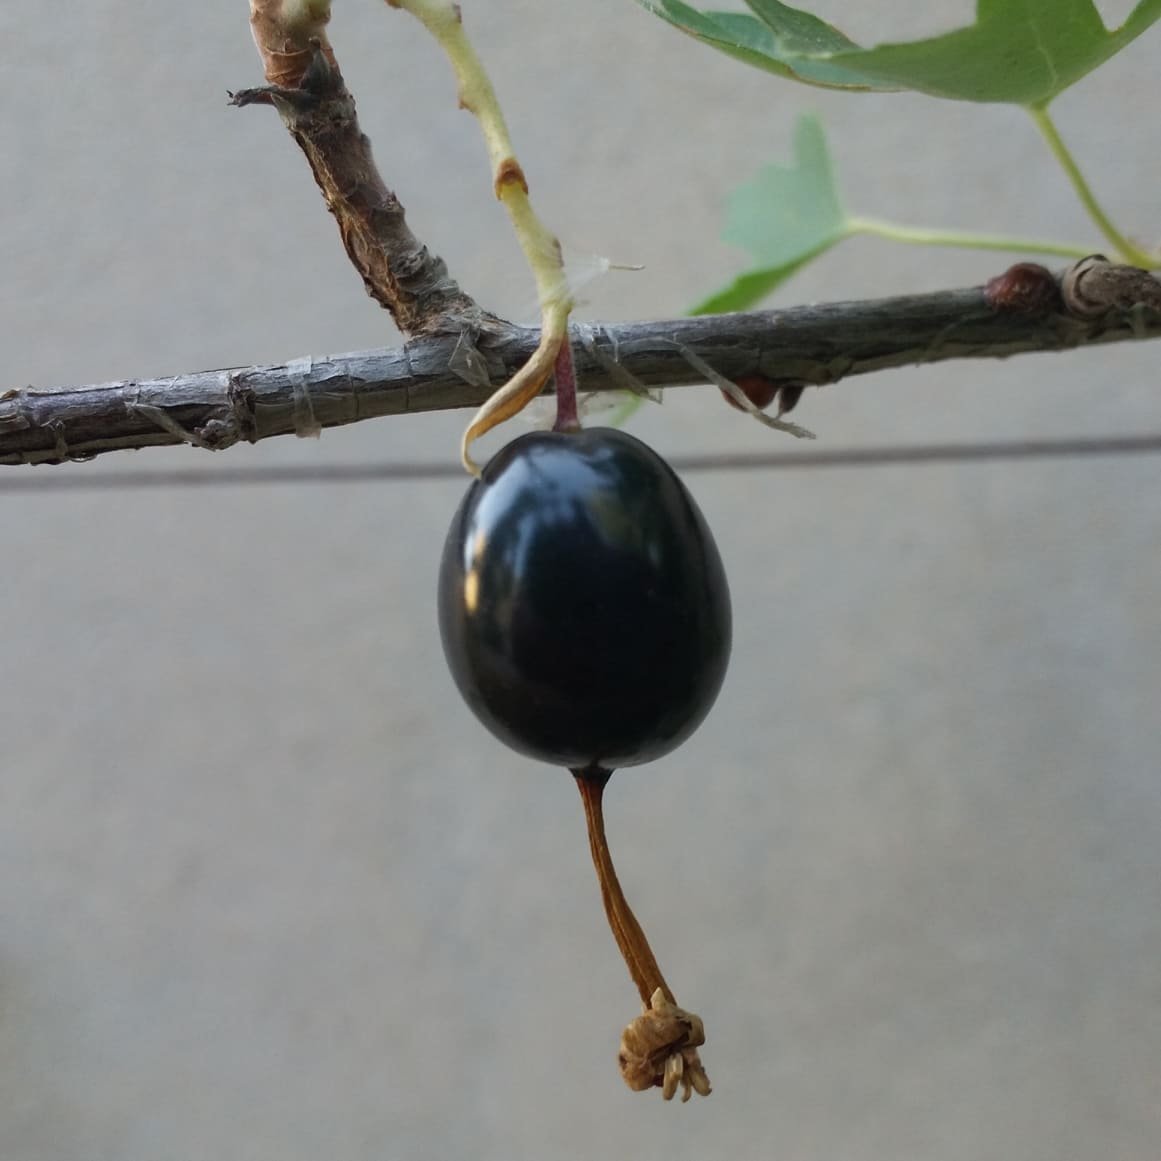 Черная ягода похожая на смородину. Смородина с длинным хвостиком черная. Черная ягода похожая на смородину с длинным хвостиком. Ягода похожая на черную смородину с хвостиком.